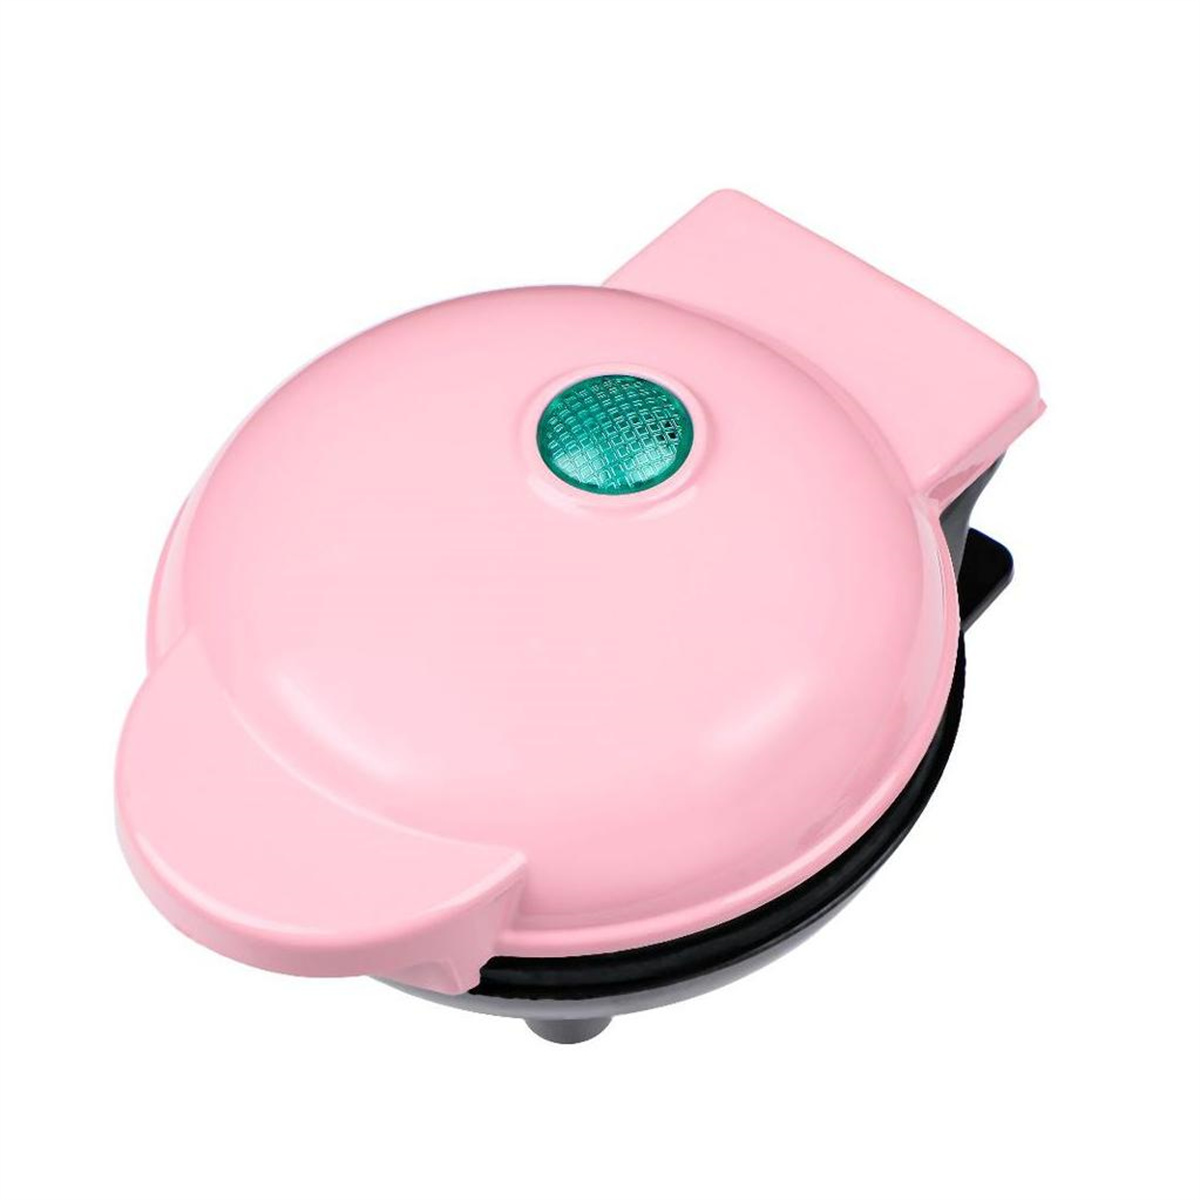 Pink FEI Waffelmaschine Mini Sandwich Maker Maker Rosa Pancake Kuchen Frühstück Maker Waffel Brotmaschine Backen